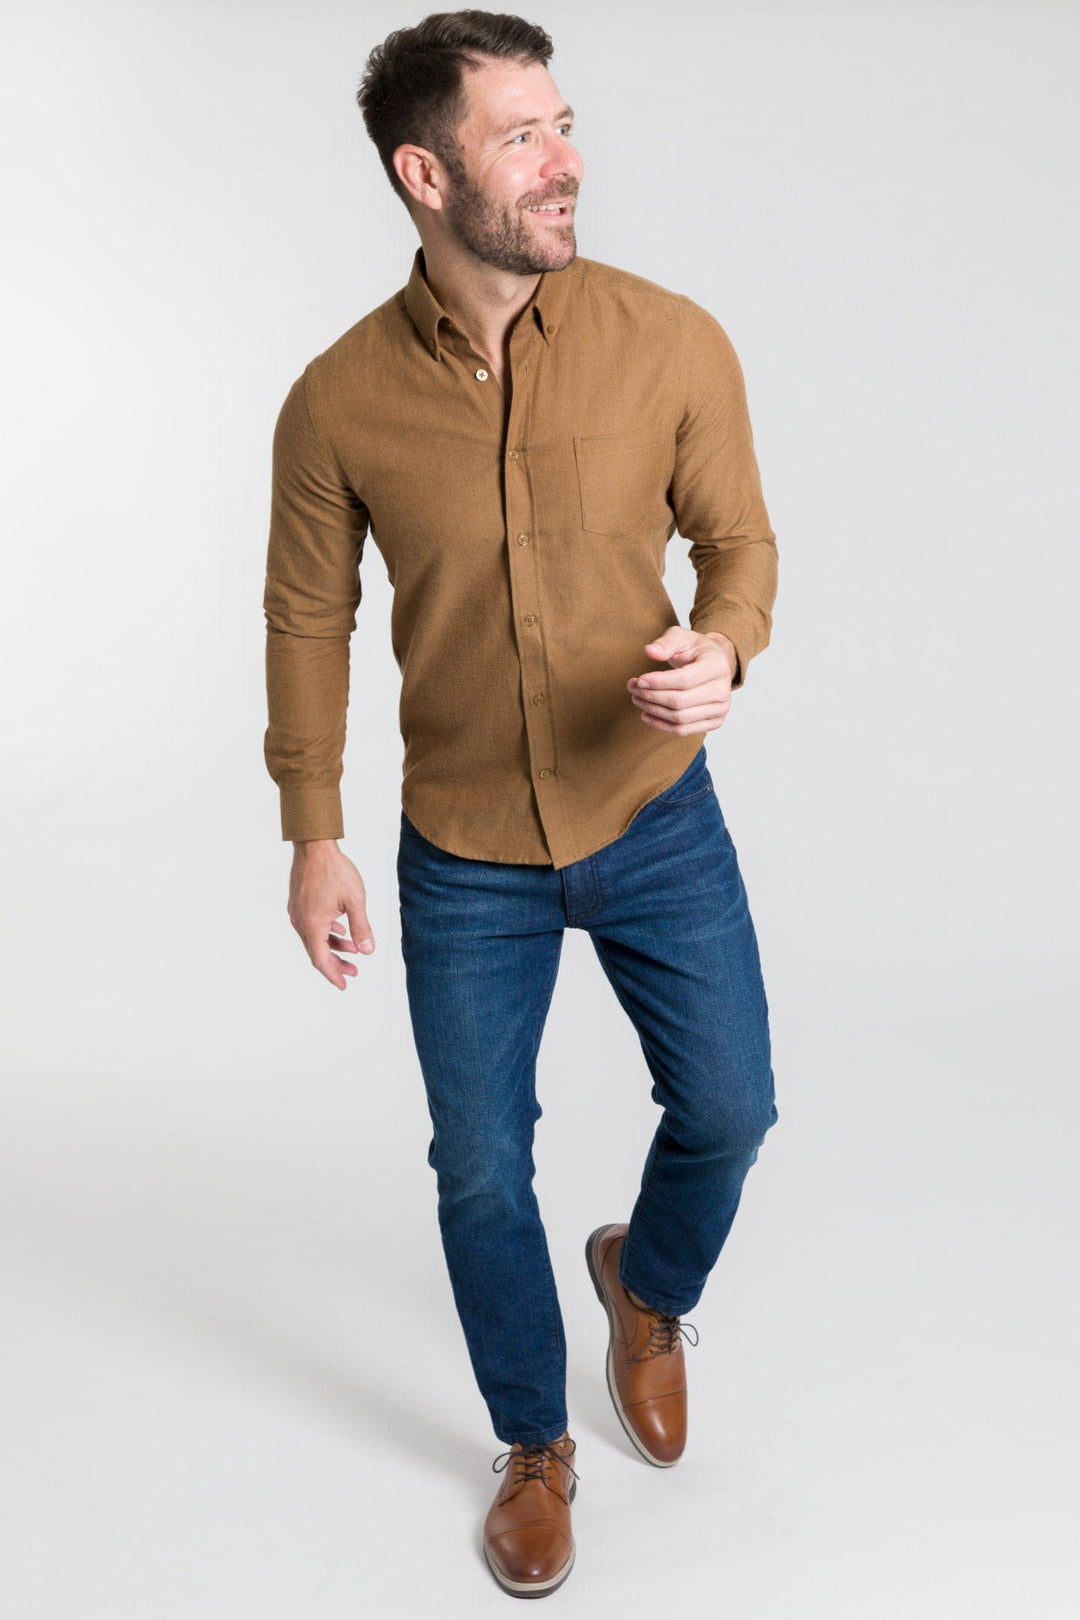 Ash & Erie Grey Linen Button-Down Shirt for Short Men